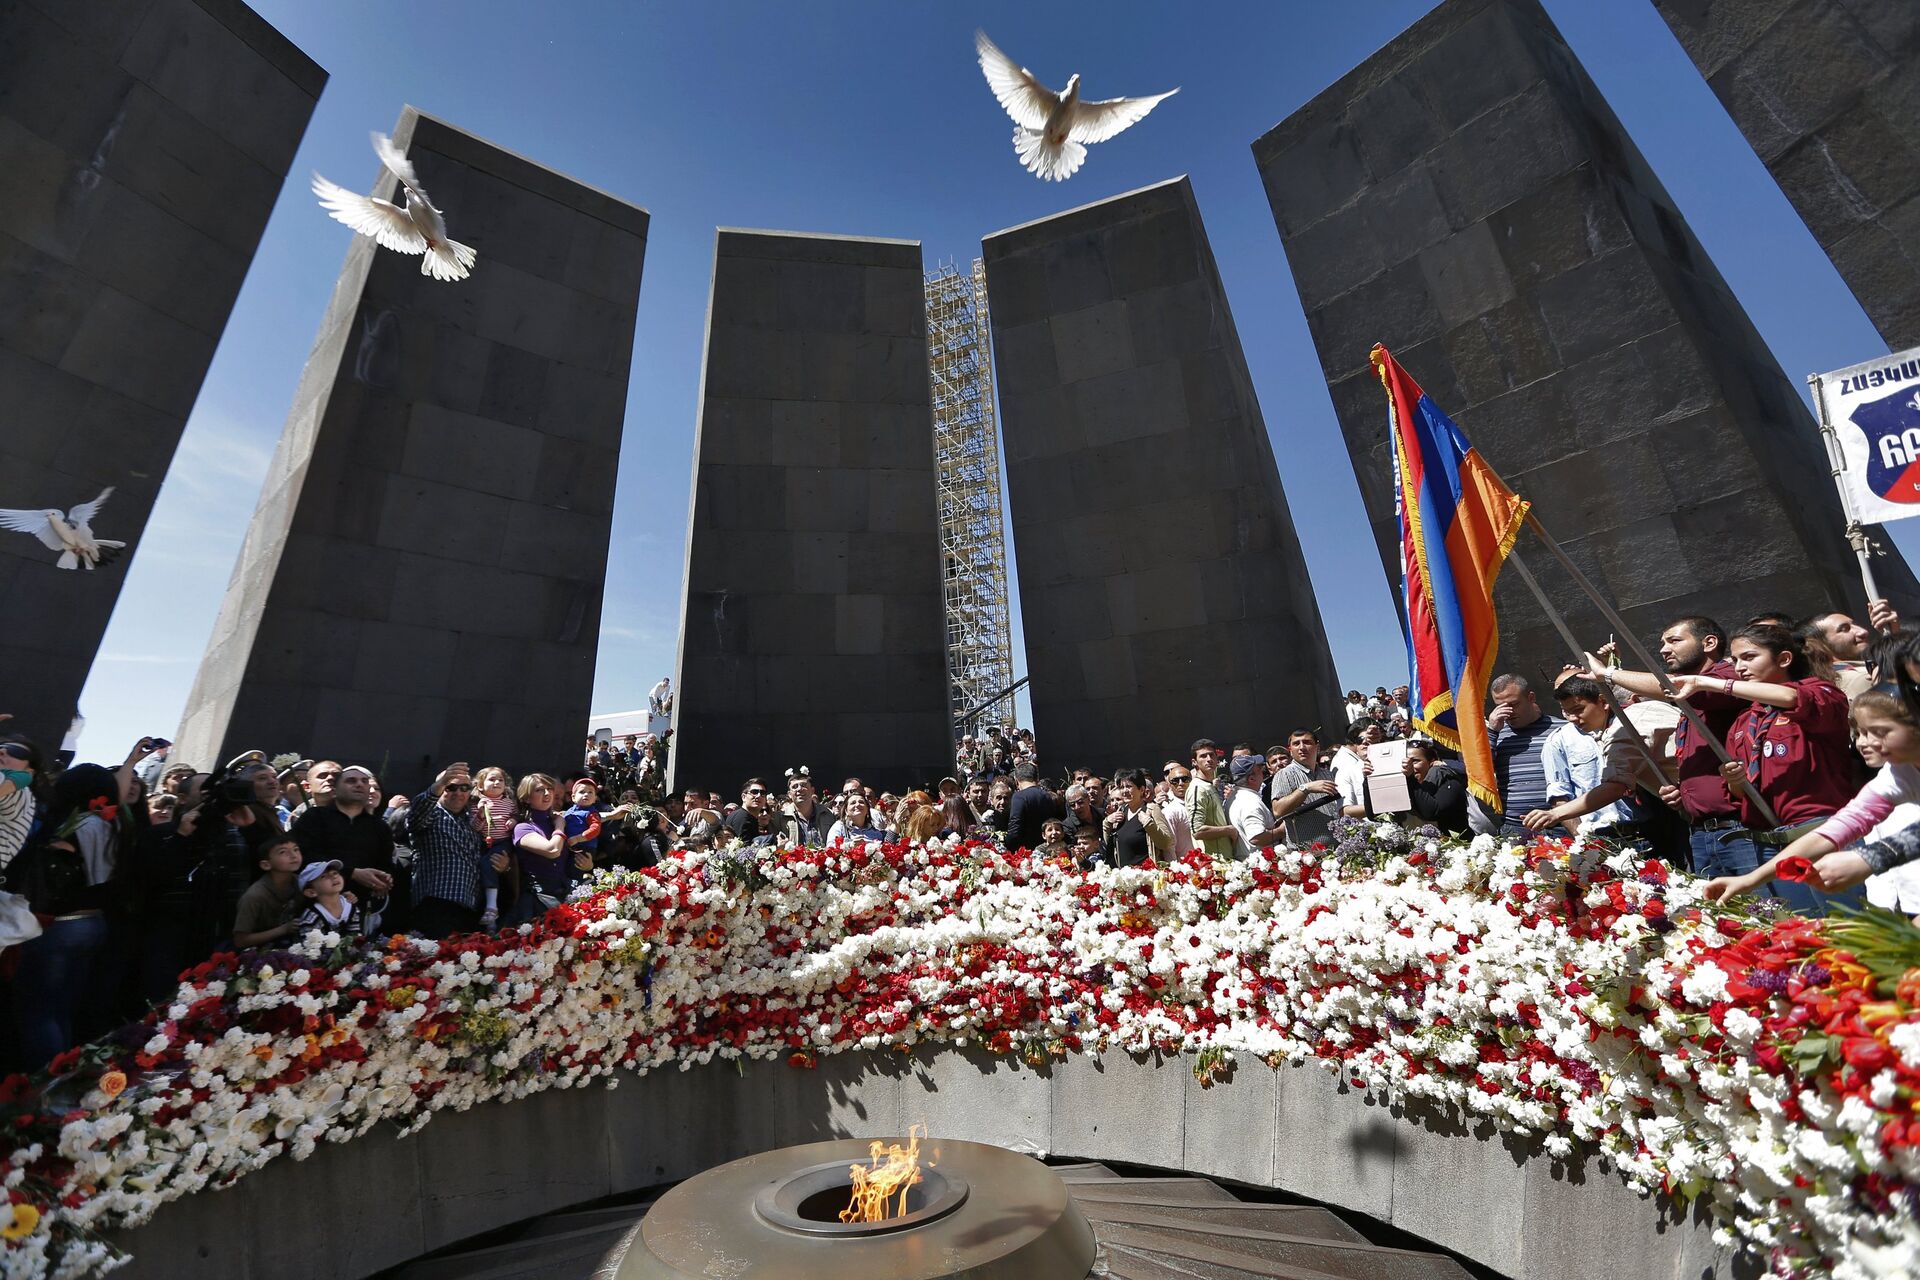 Erdogan afirma que Turquia honra memória dos armênios massacrados em 1915 - Sputnik Brasil, 1920, 24.04.2021